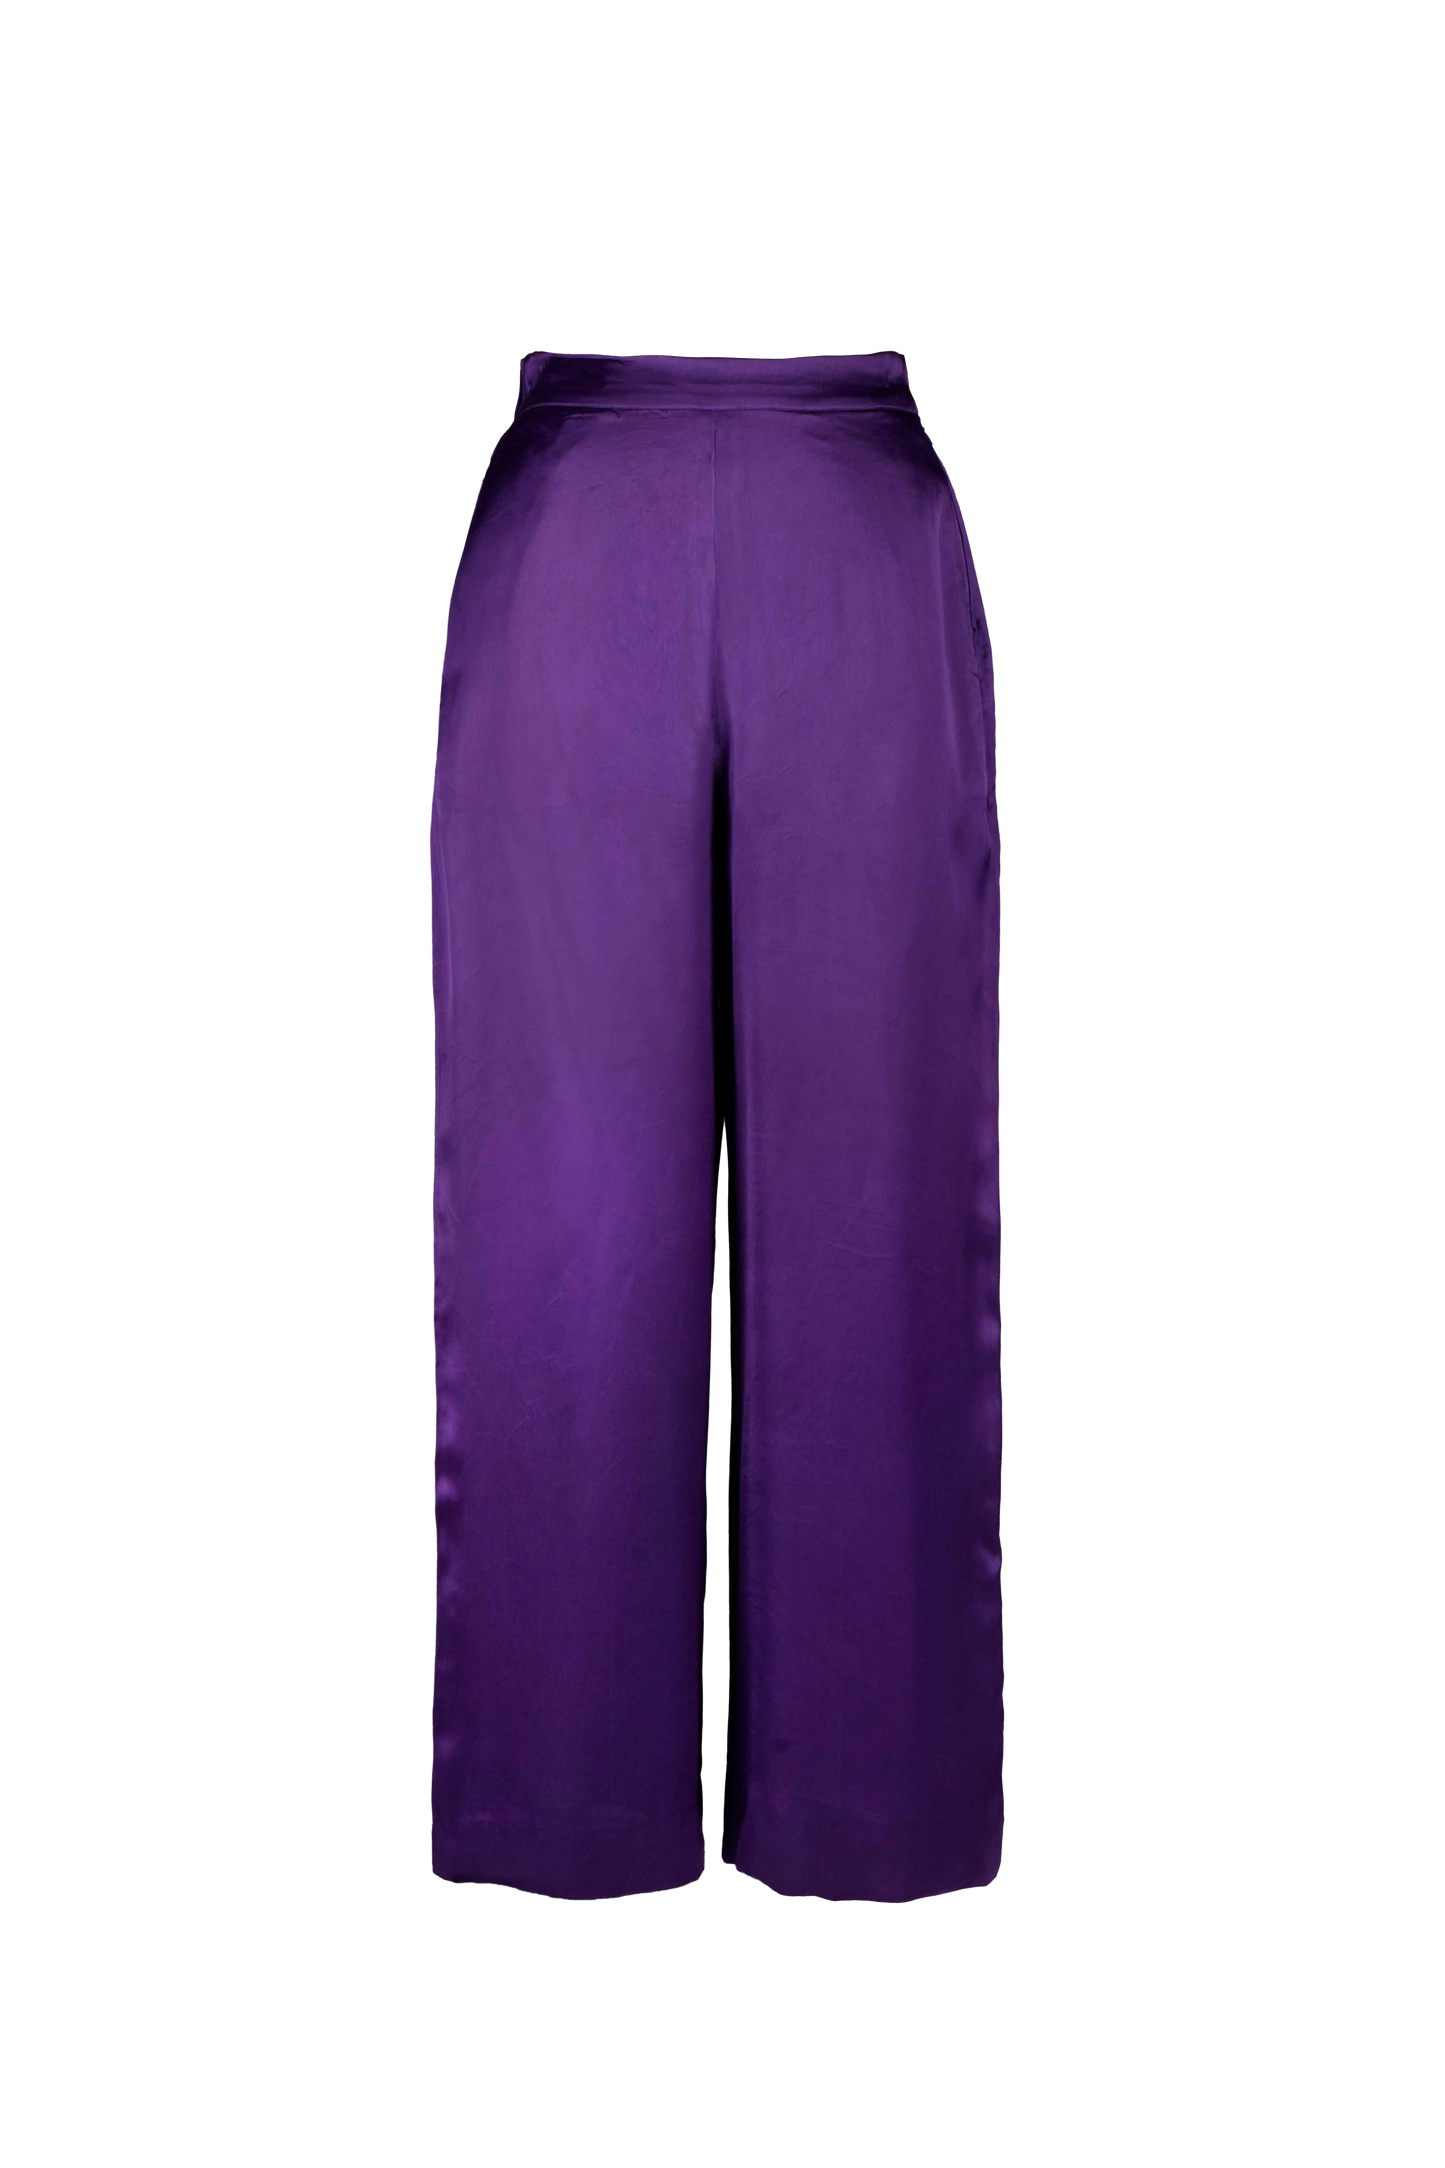 Kiah Pants in Vivid Violet